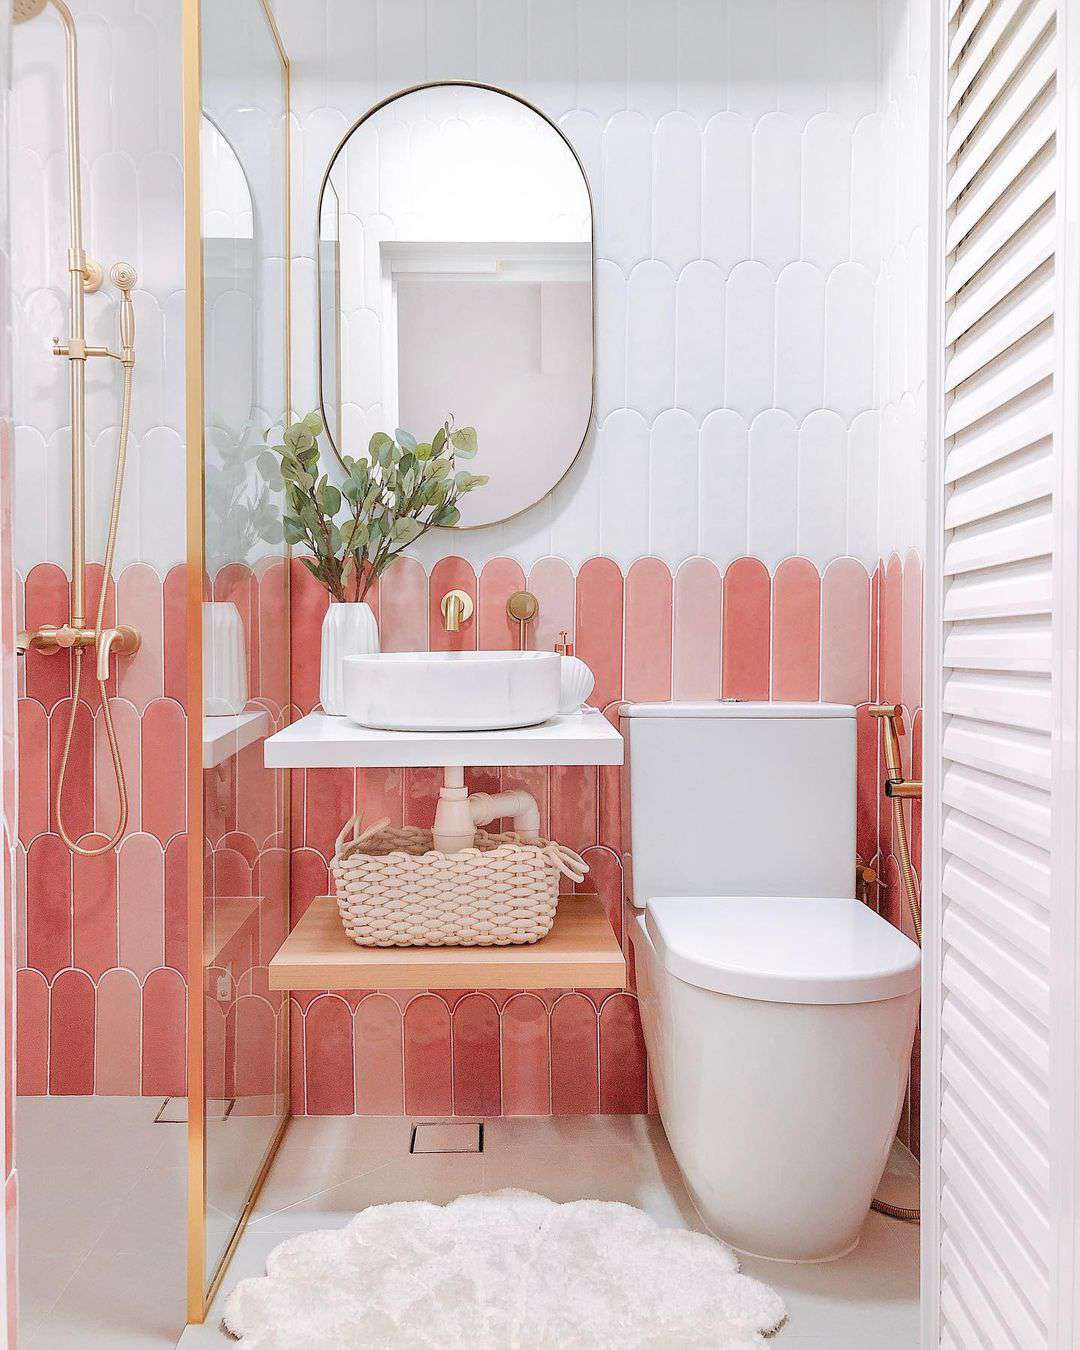 Carrelage rose dans une salle de bain contemporaine blanche